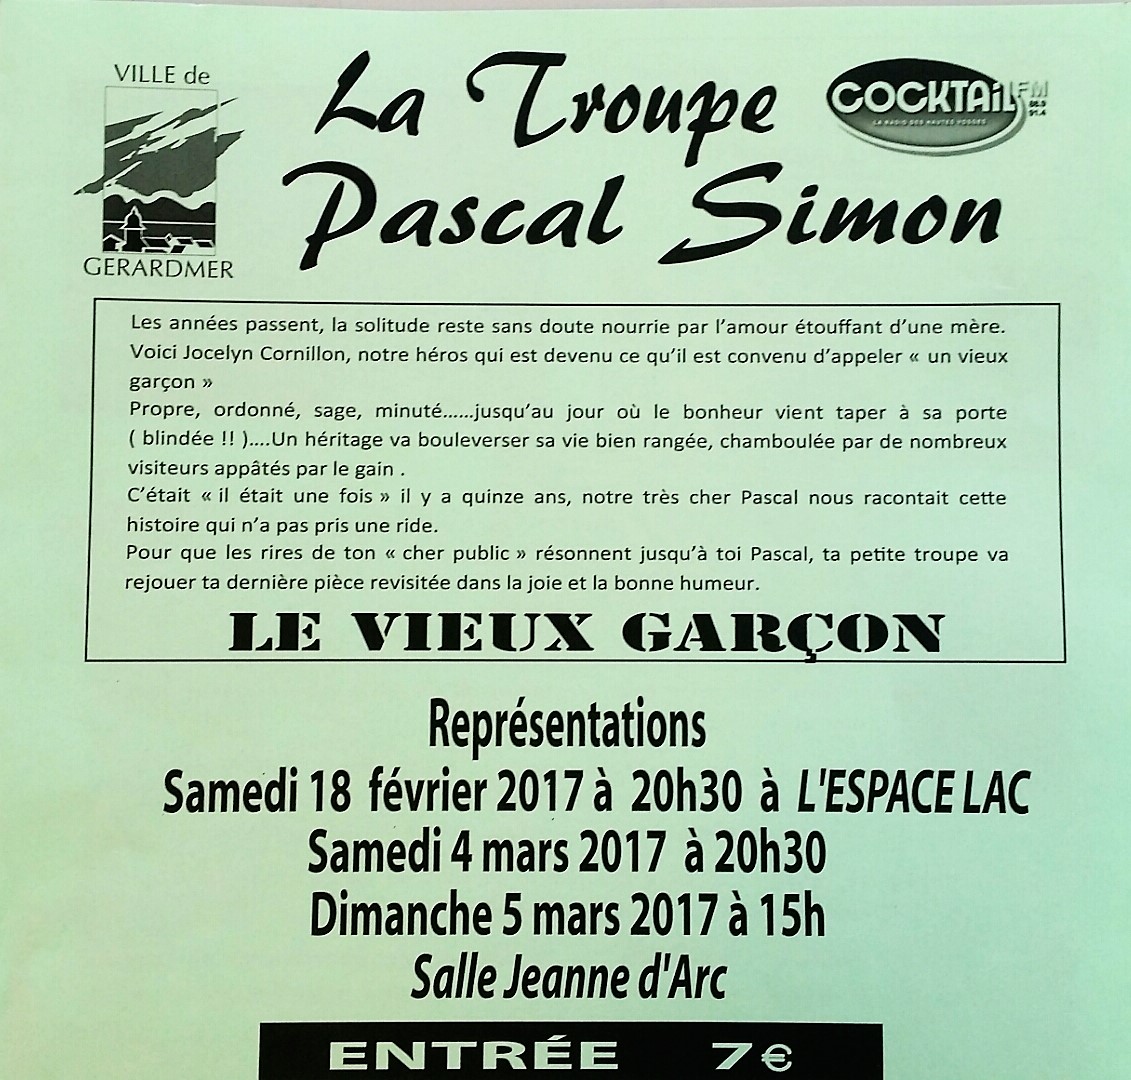 La Troupe Pascal Simon rejoue Le Vieux Garcon 